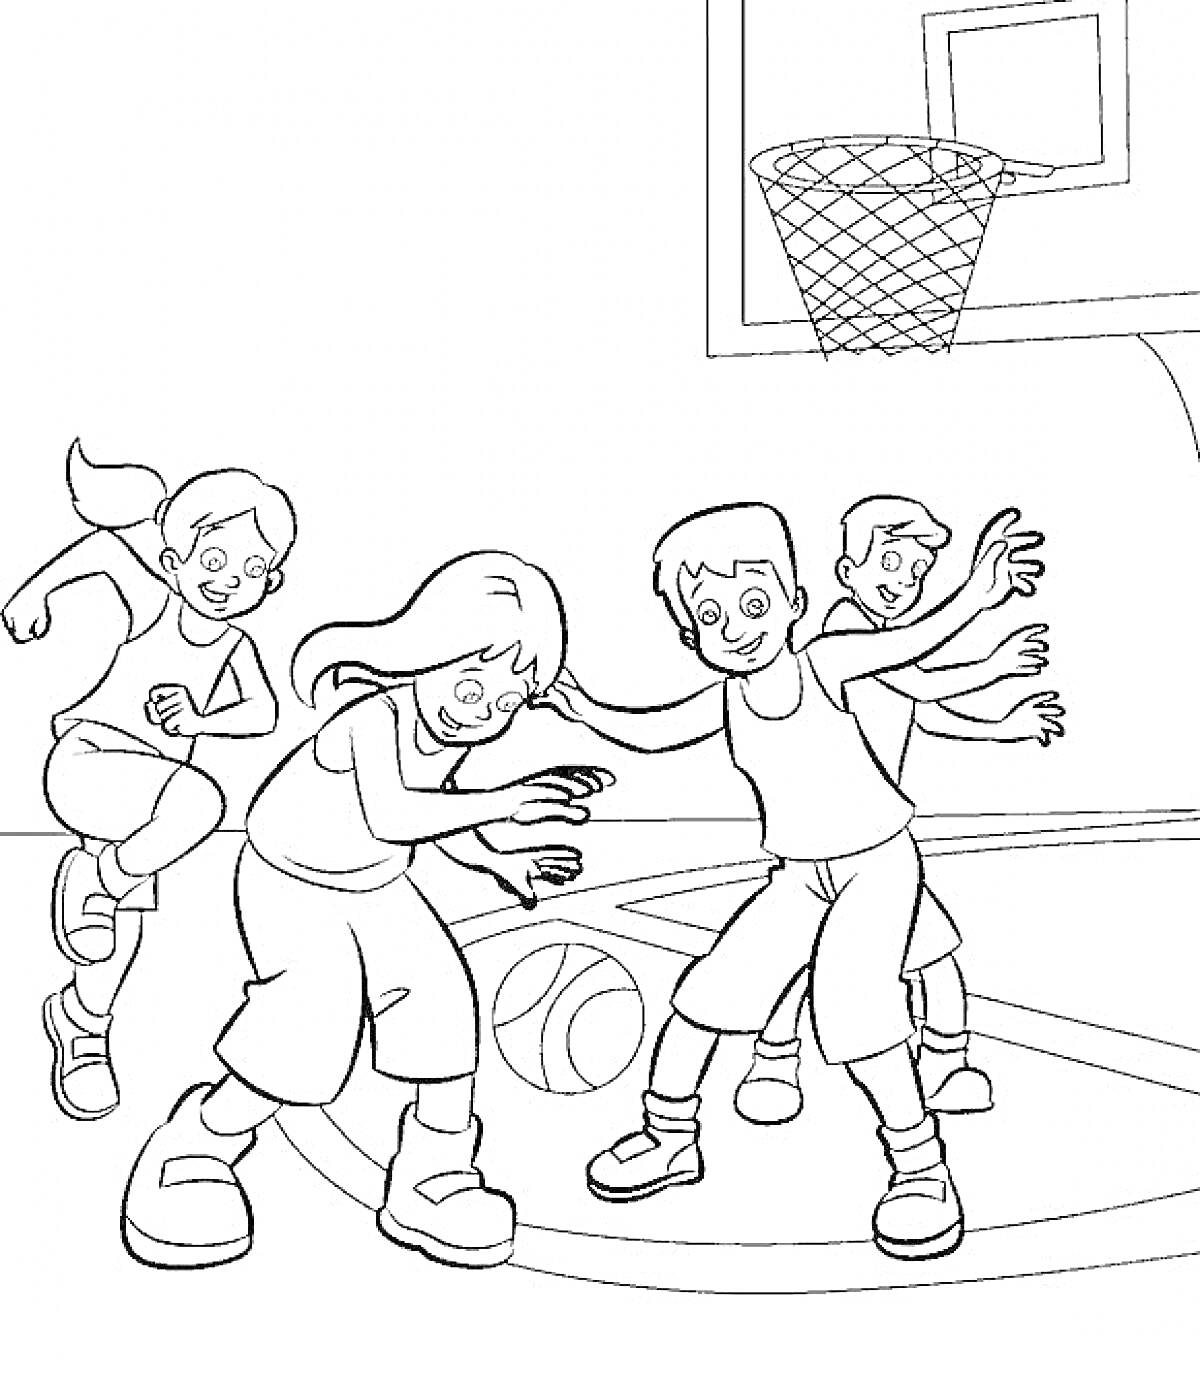 Дети играют в баскетбол на спортивной площадке. Мяч, баскетбольное кольцо, четверо детей в спортивной форме.